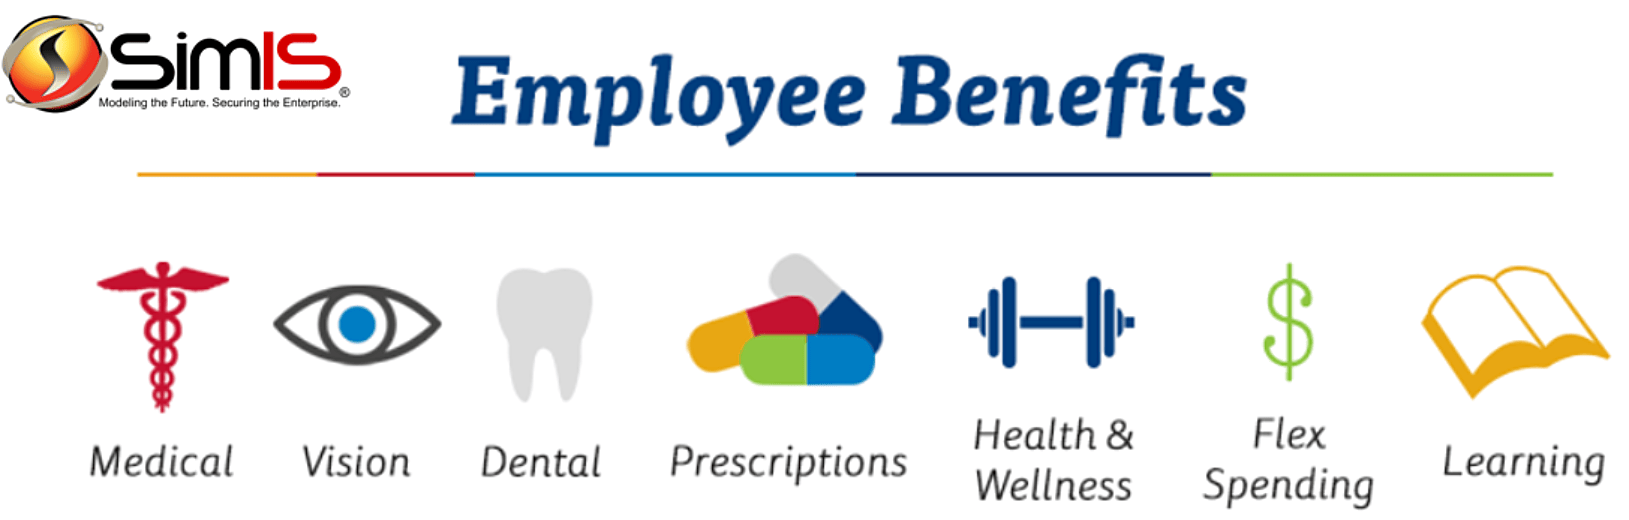 SimIS Employee Benefits graphic